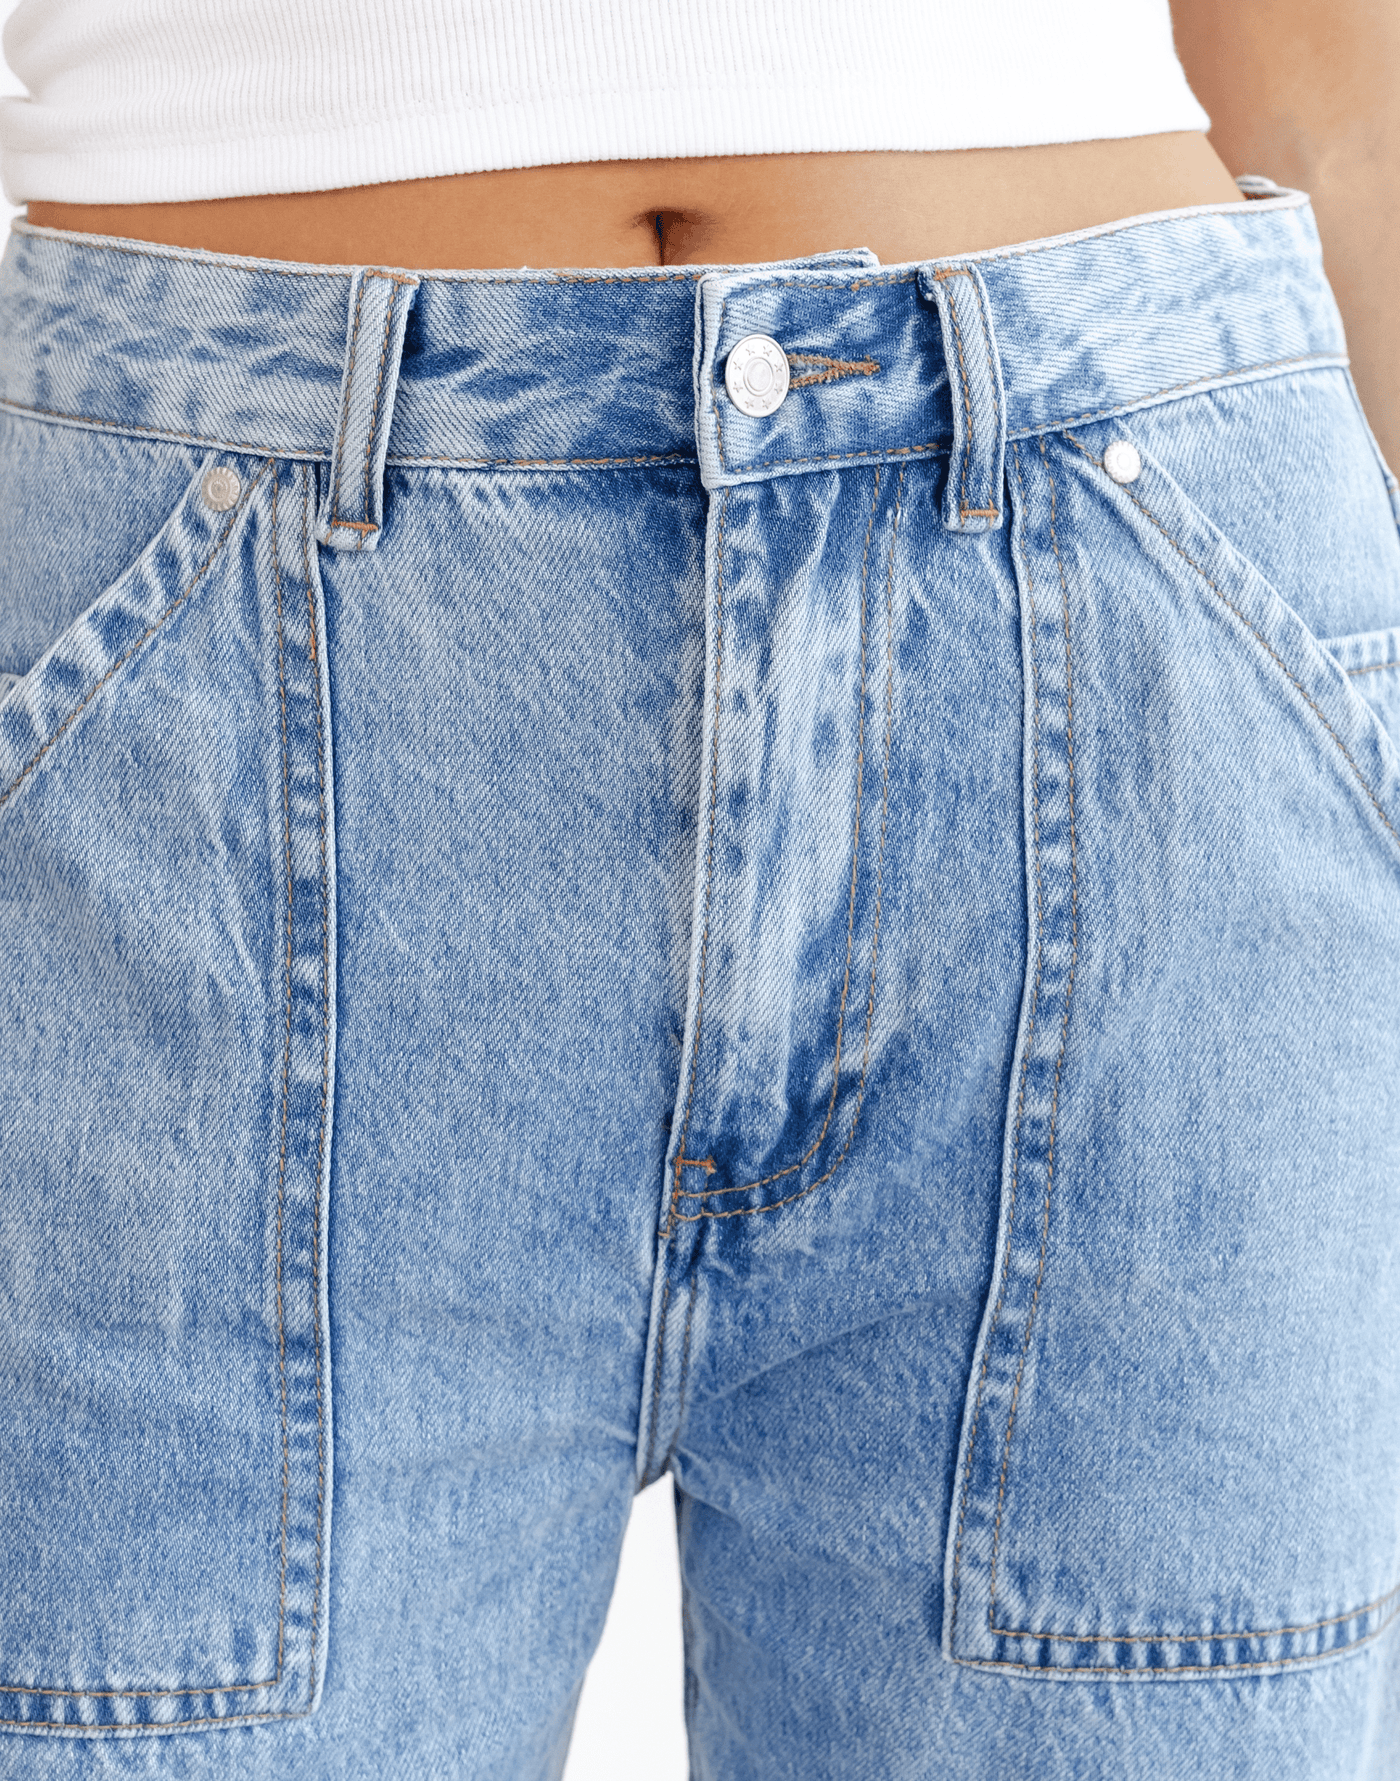 Montana Wide Leg Jeans (Blue) - Blue Denim Jeans - Women's Pants - Charcoal Clothing